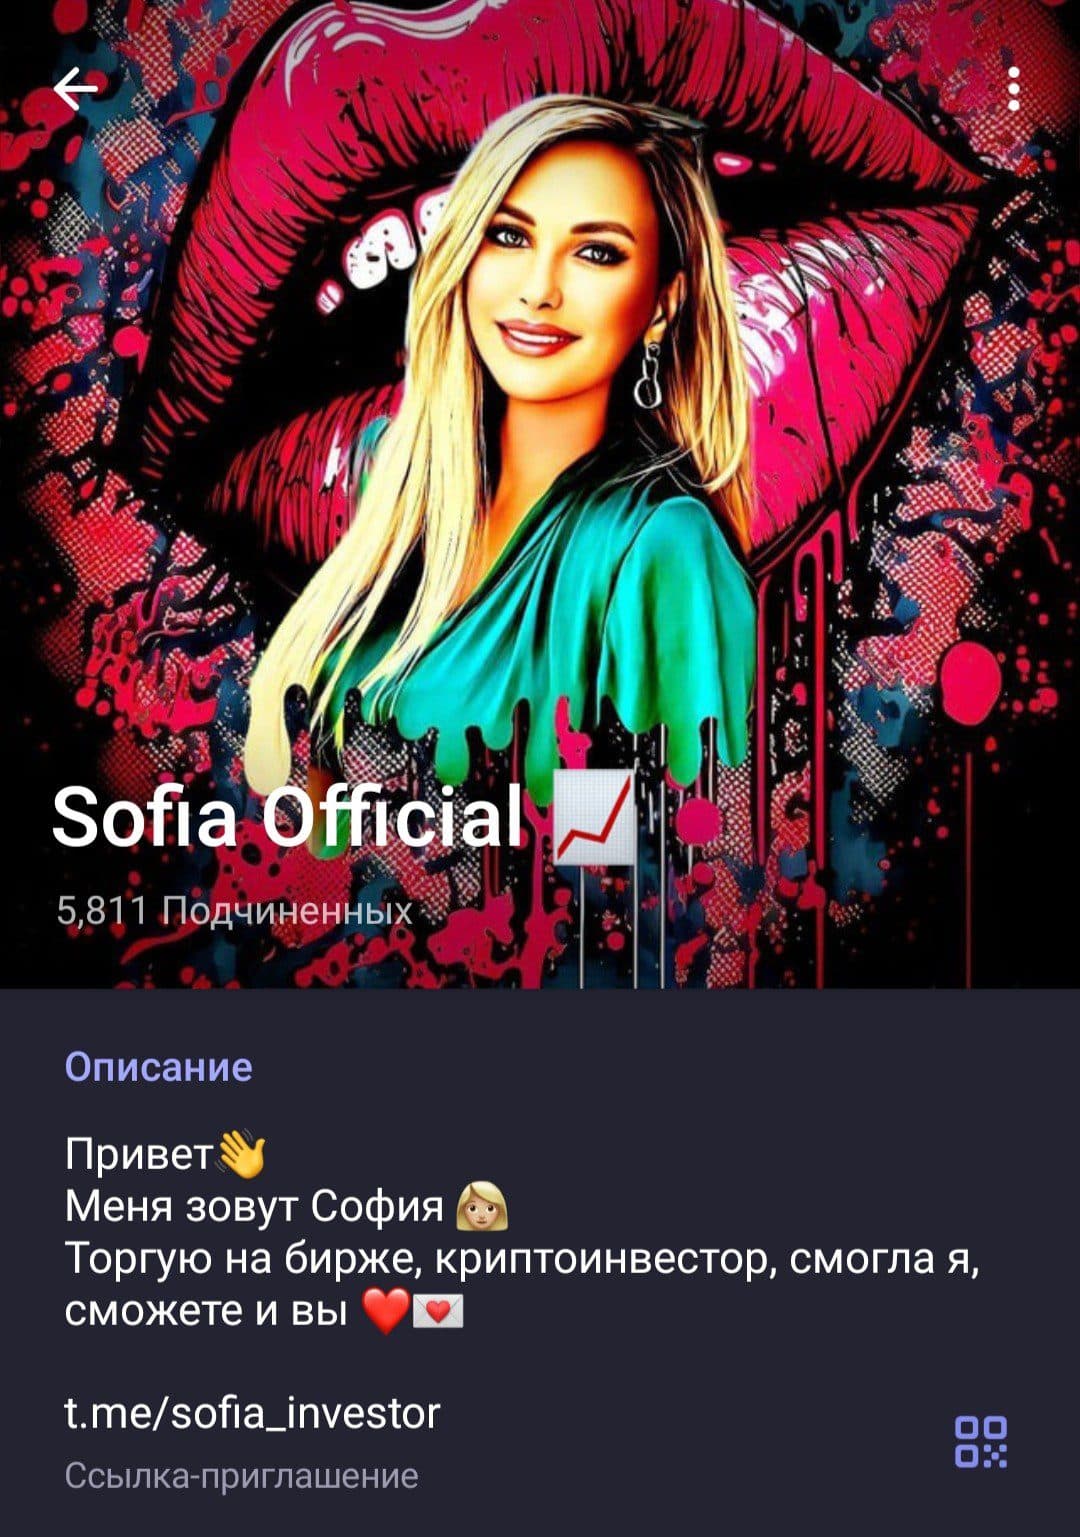 Телеграм Sofia Official